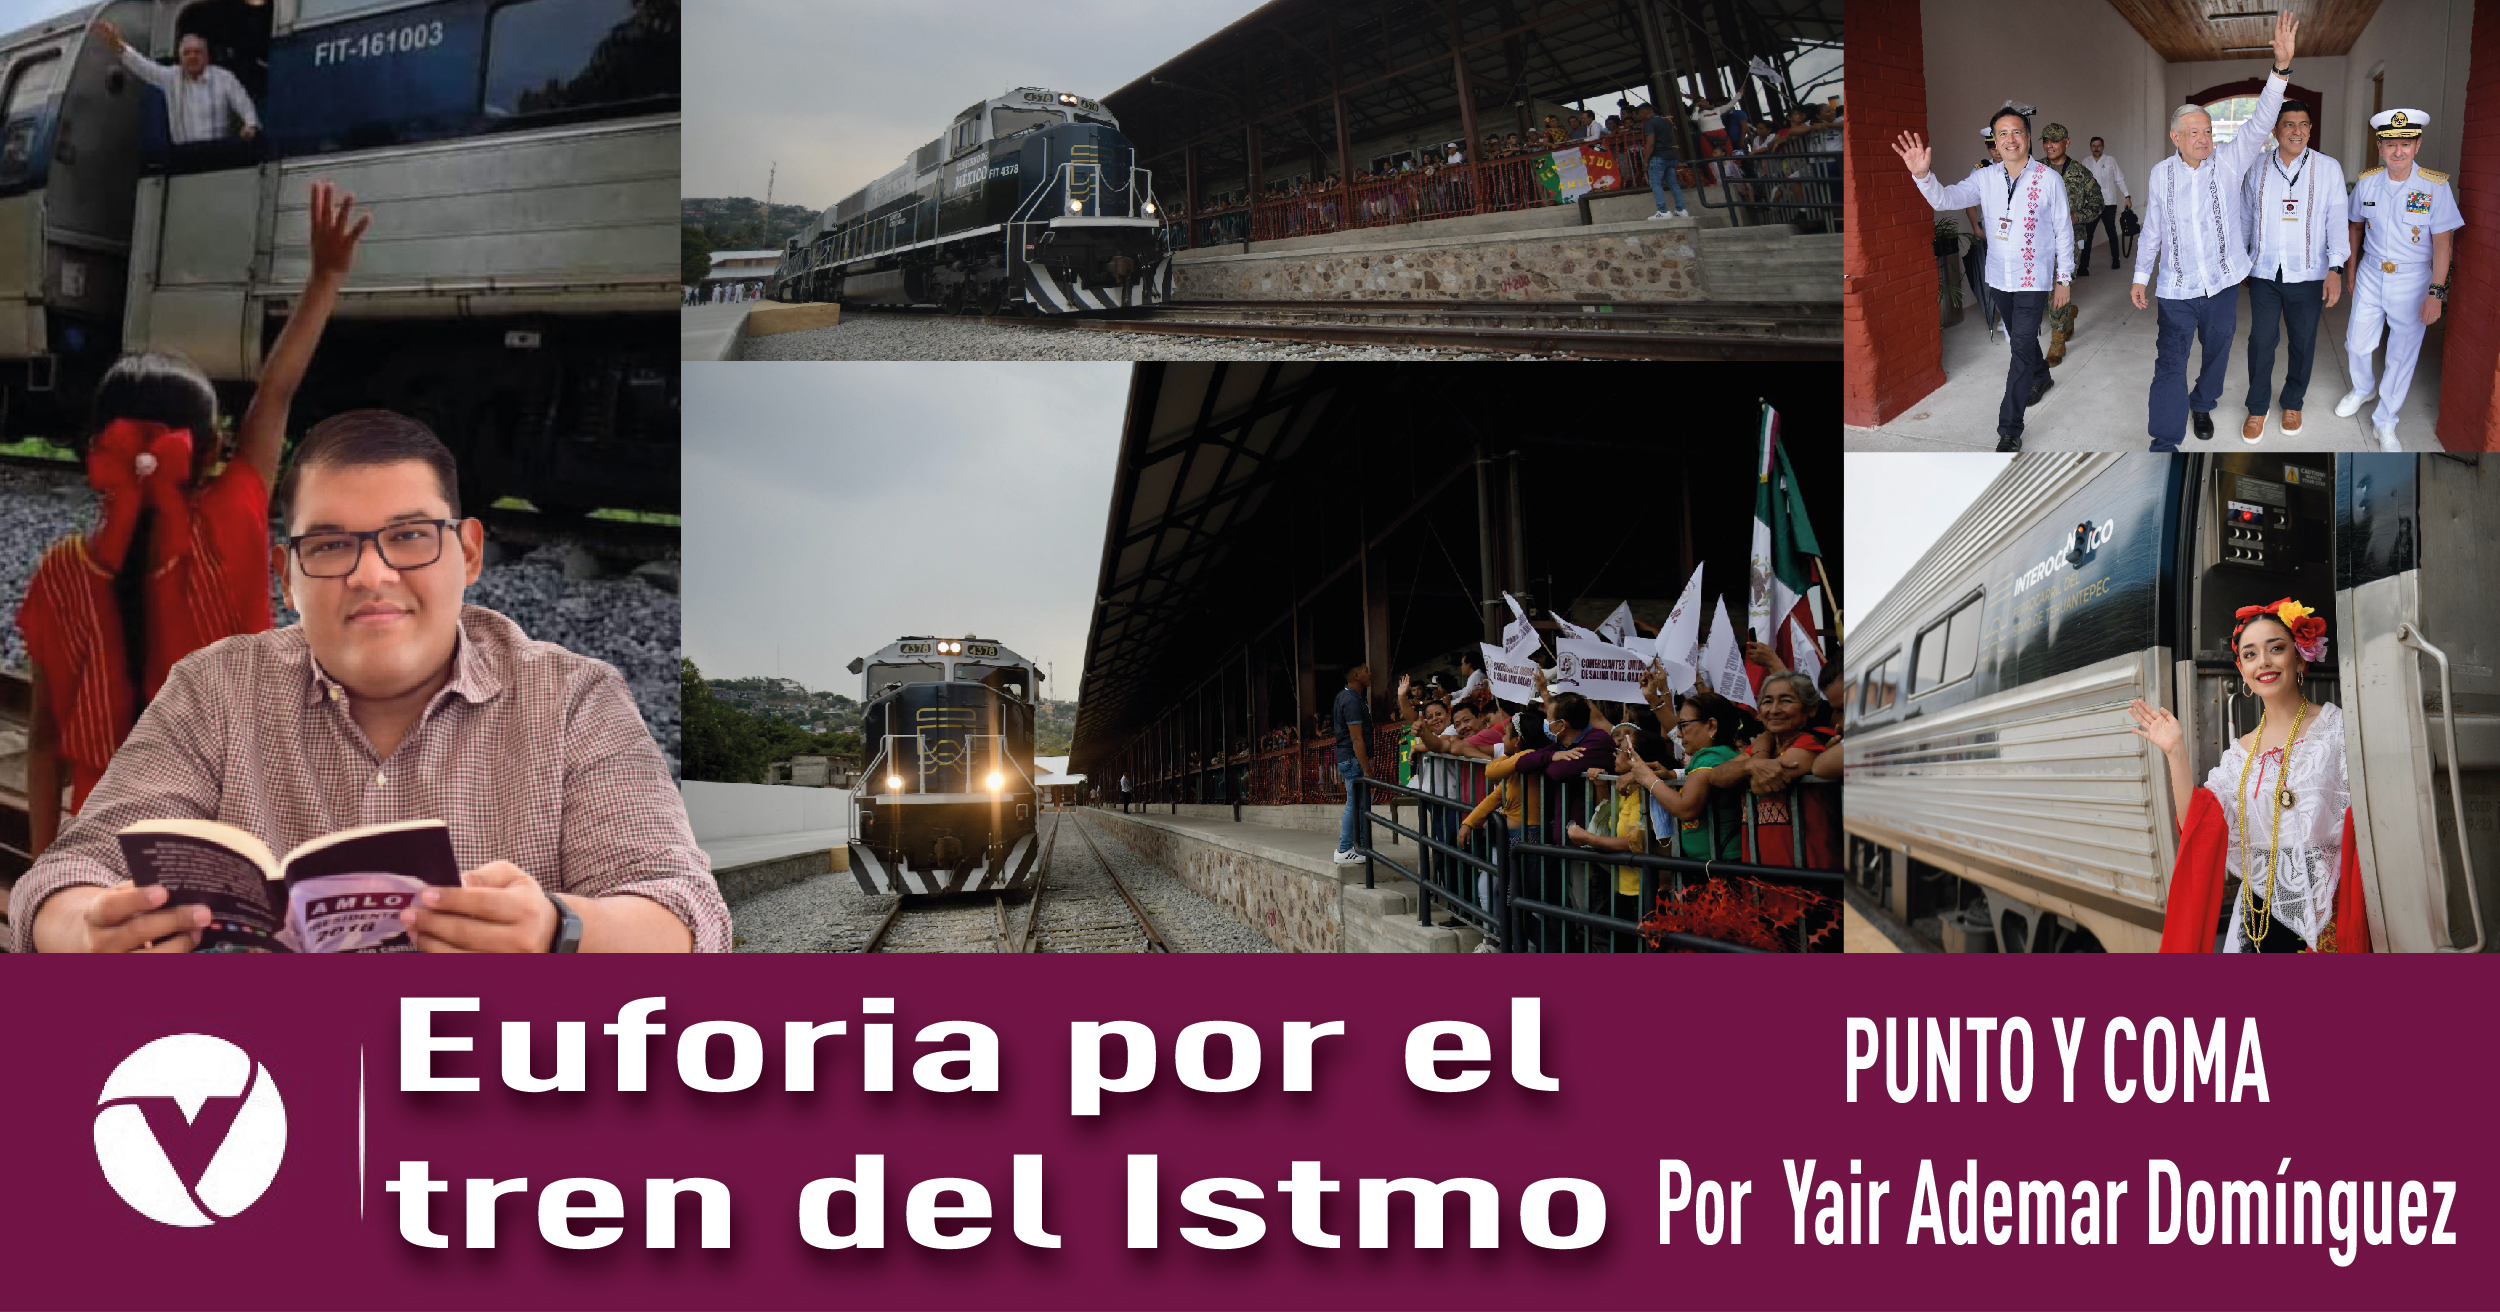 Euforia por el tren del Istmo|PUNTO Y COMA|Por Yair Ademar Domínguez